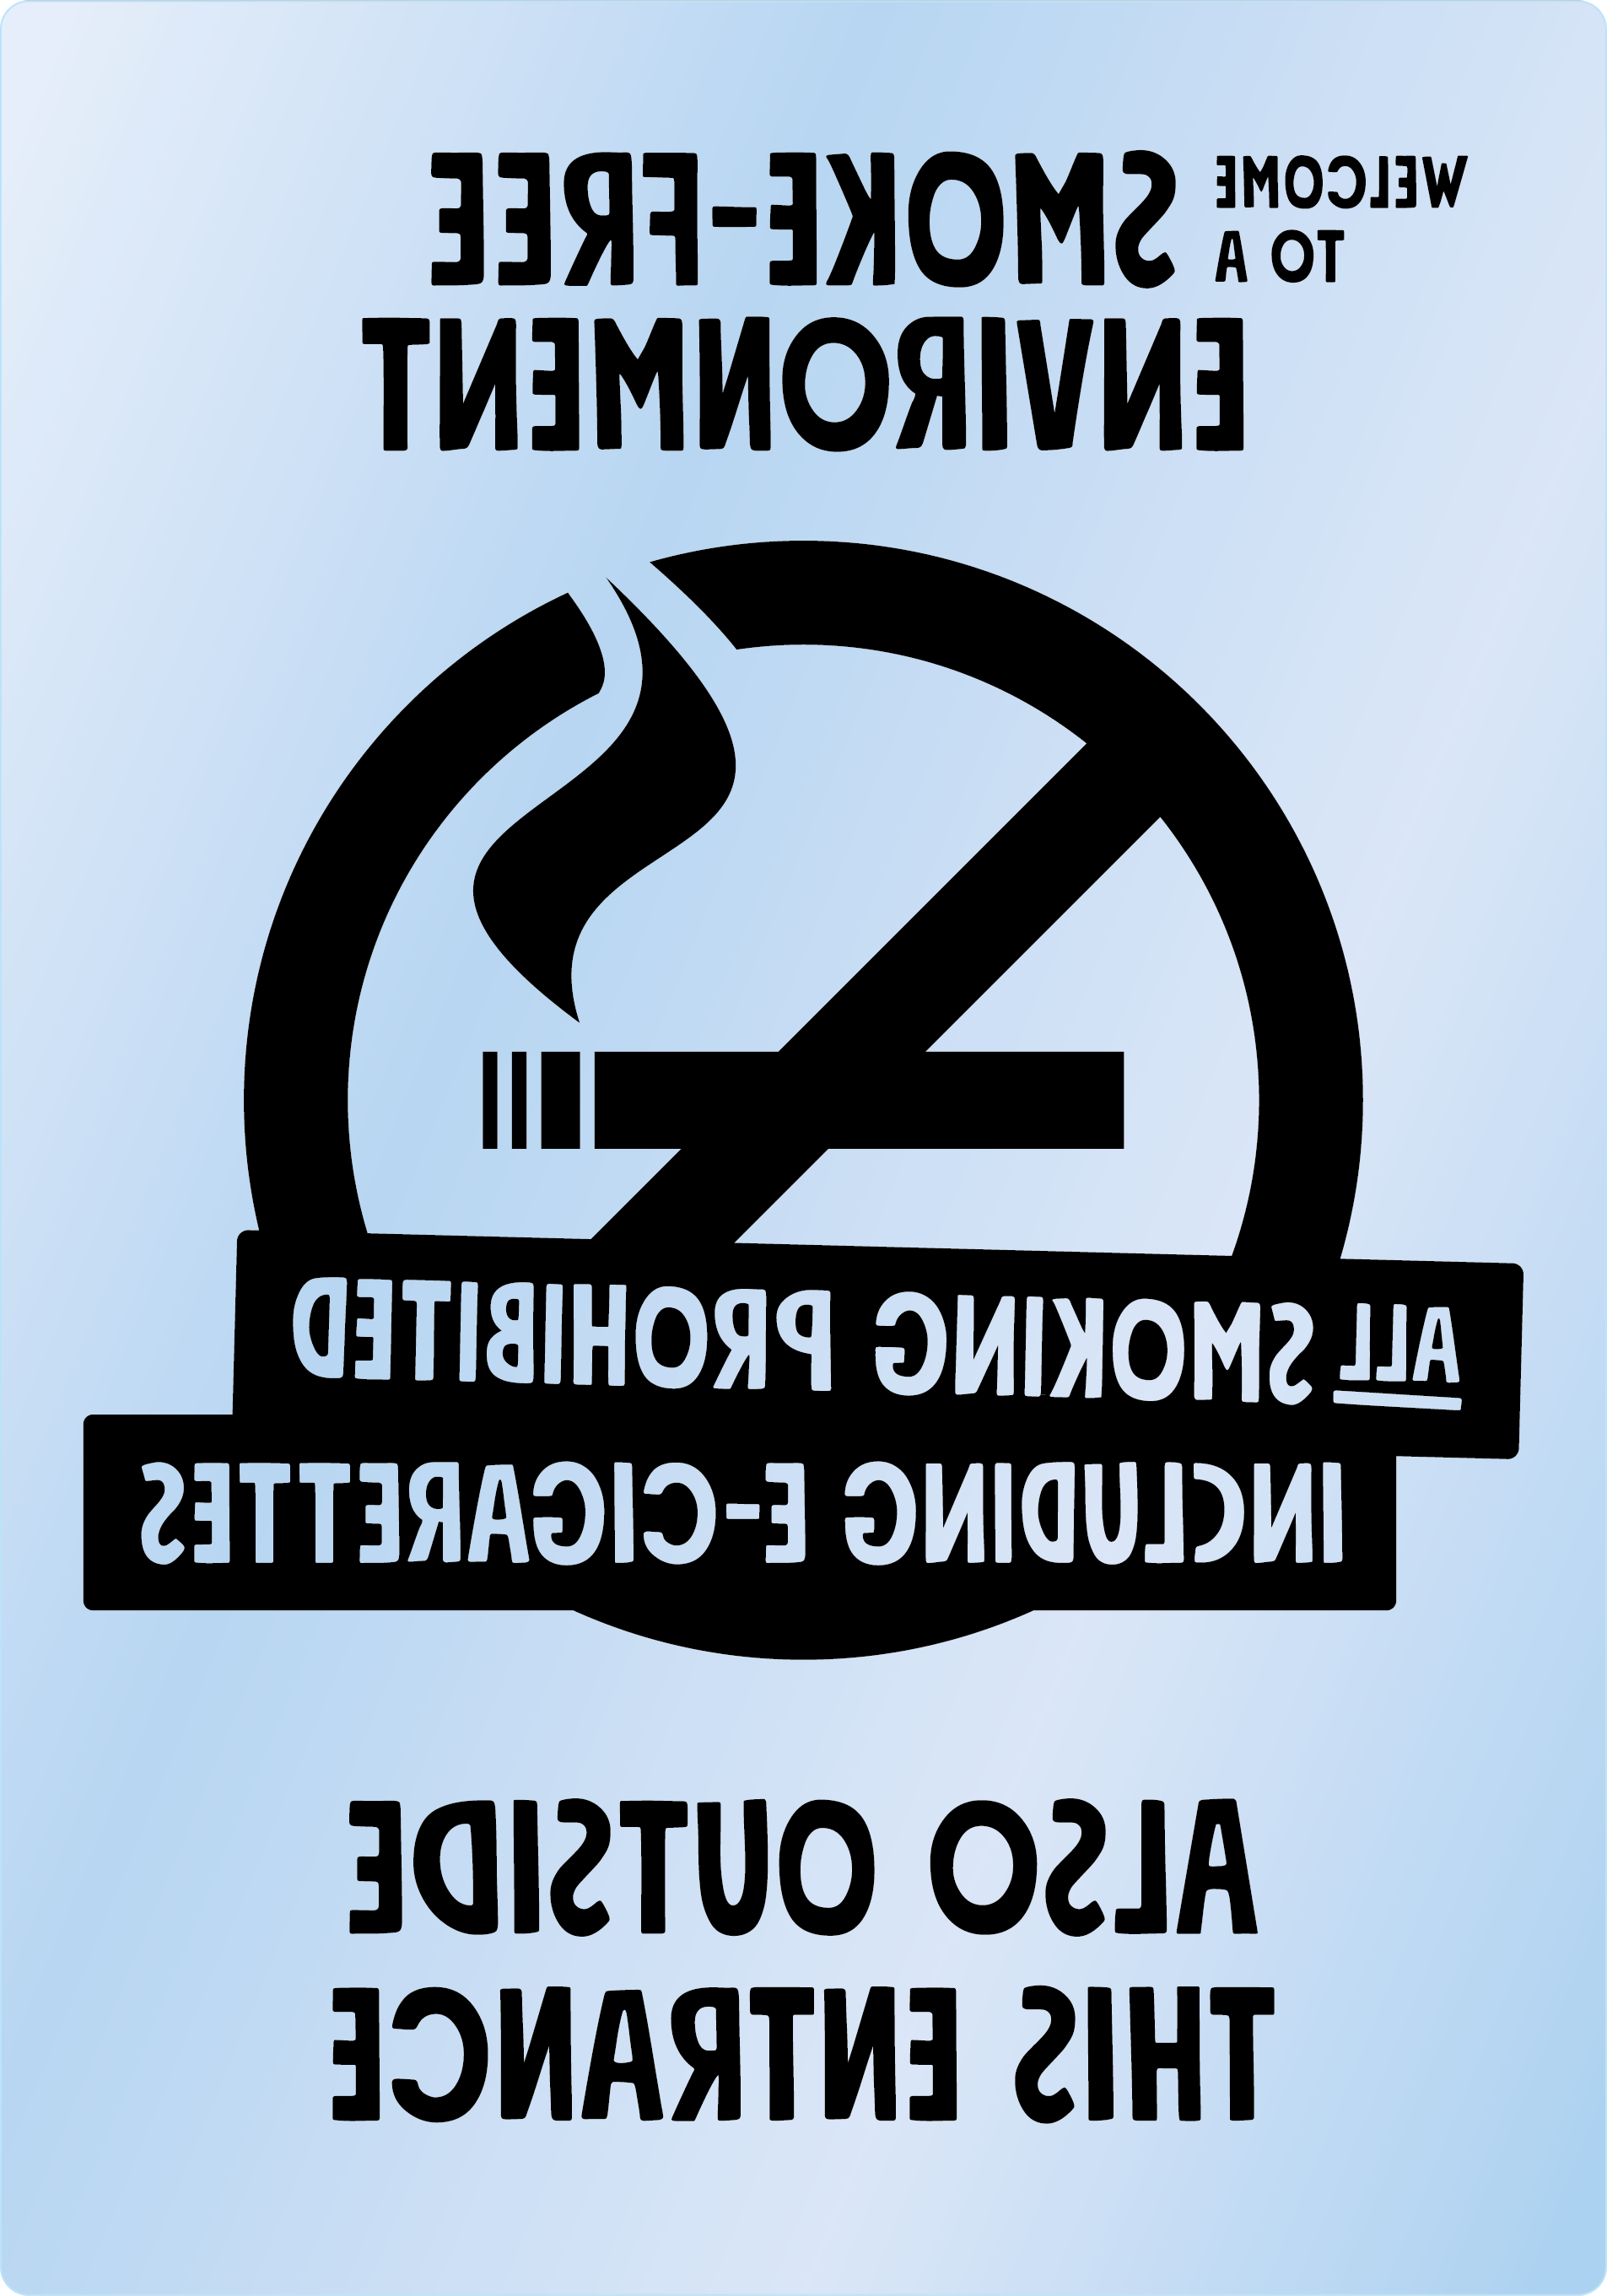 Bild rökförbudsskylt 04B13 ENG: Svart / Transparent